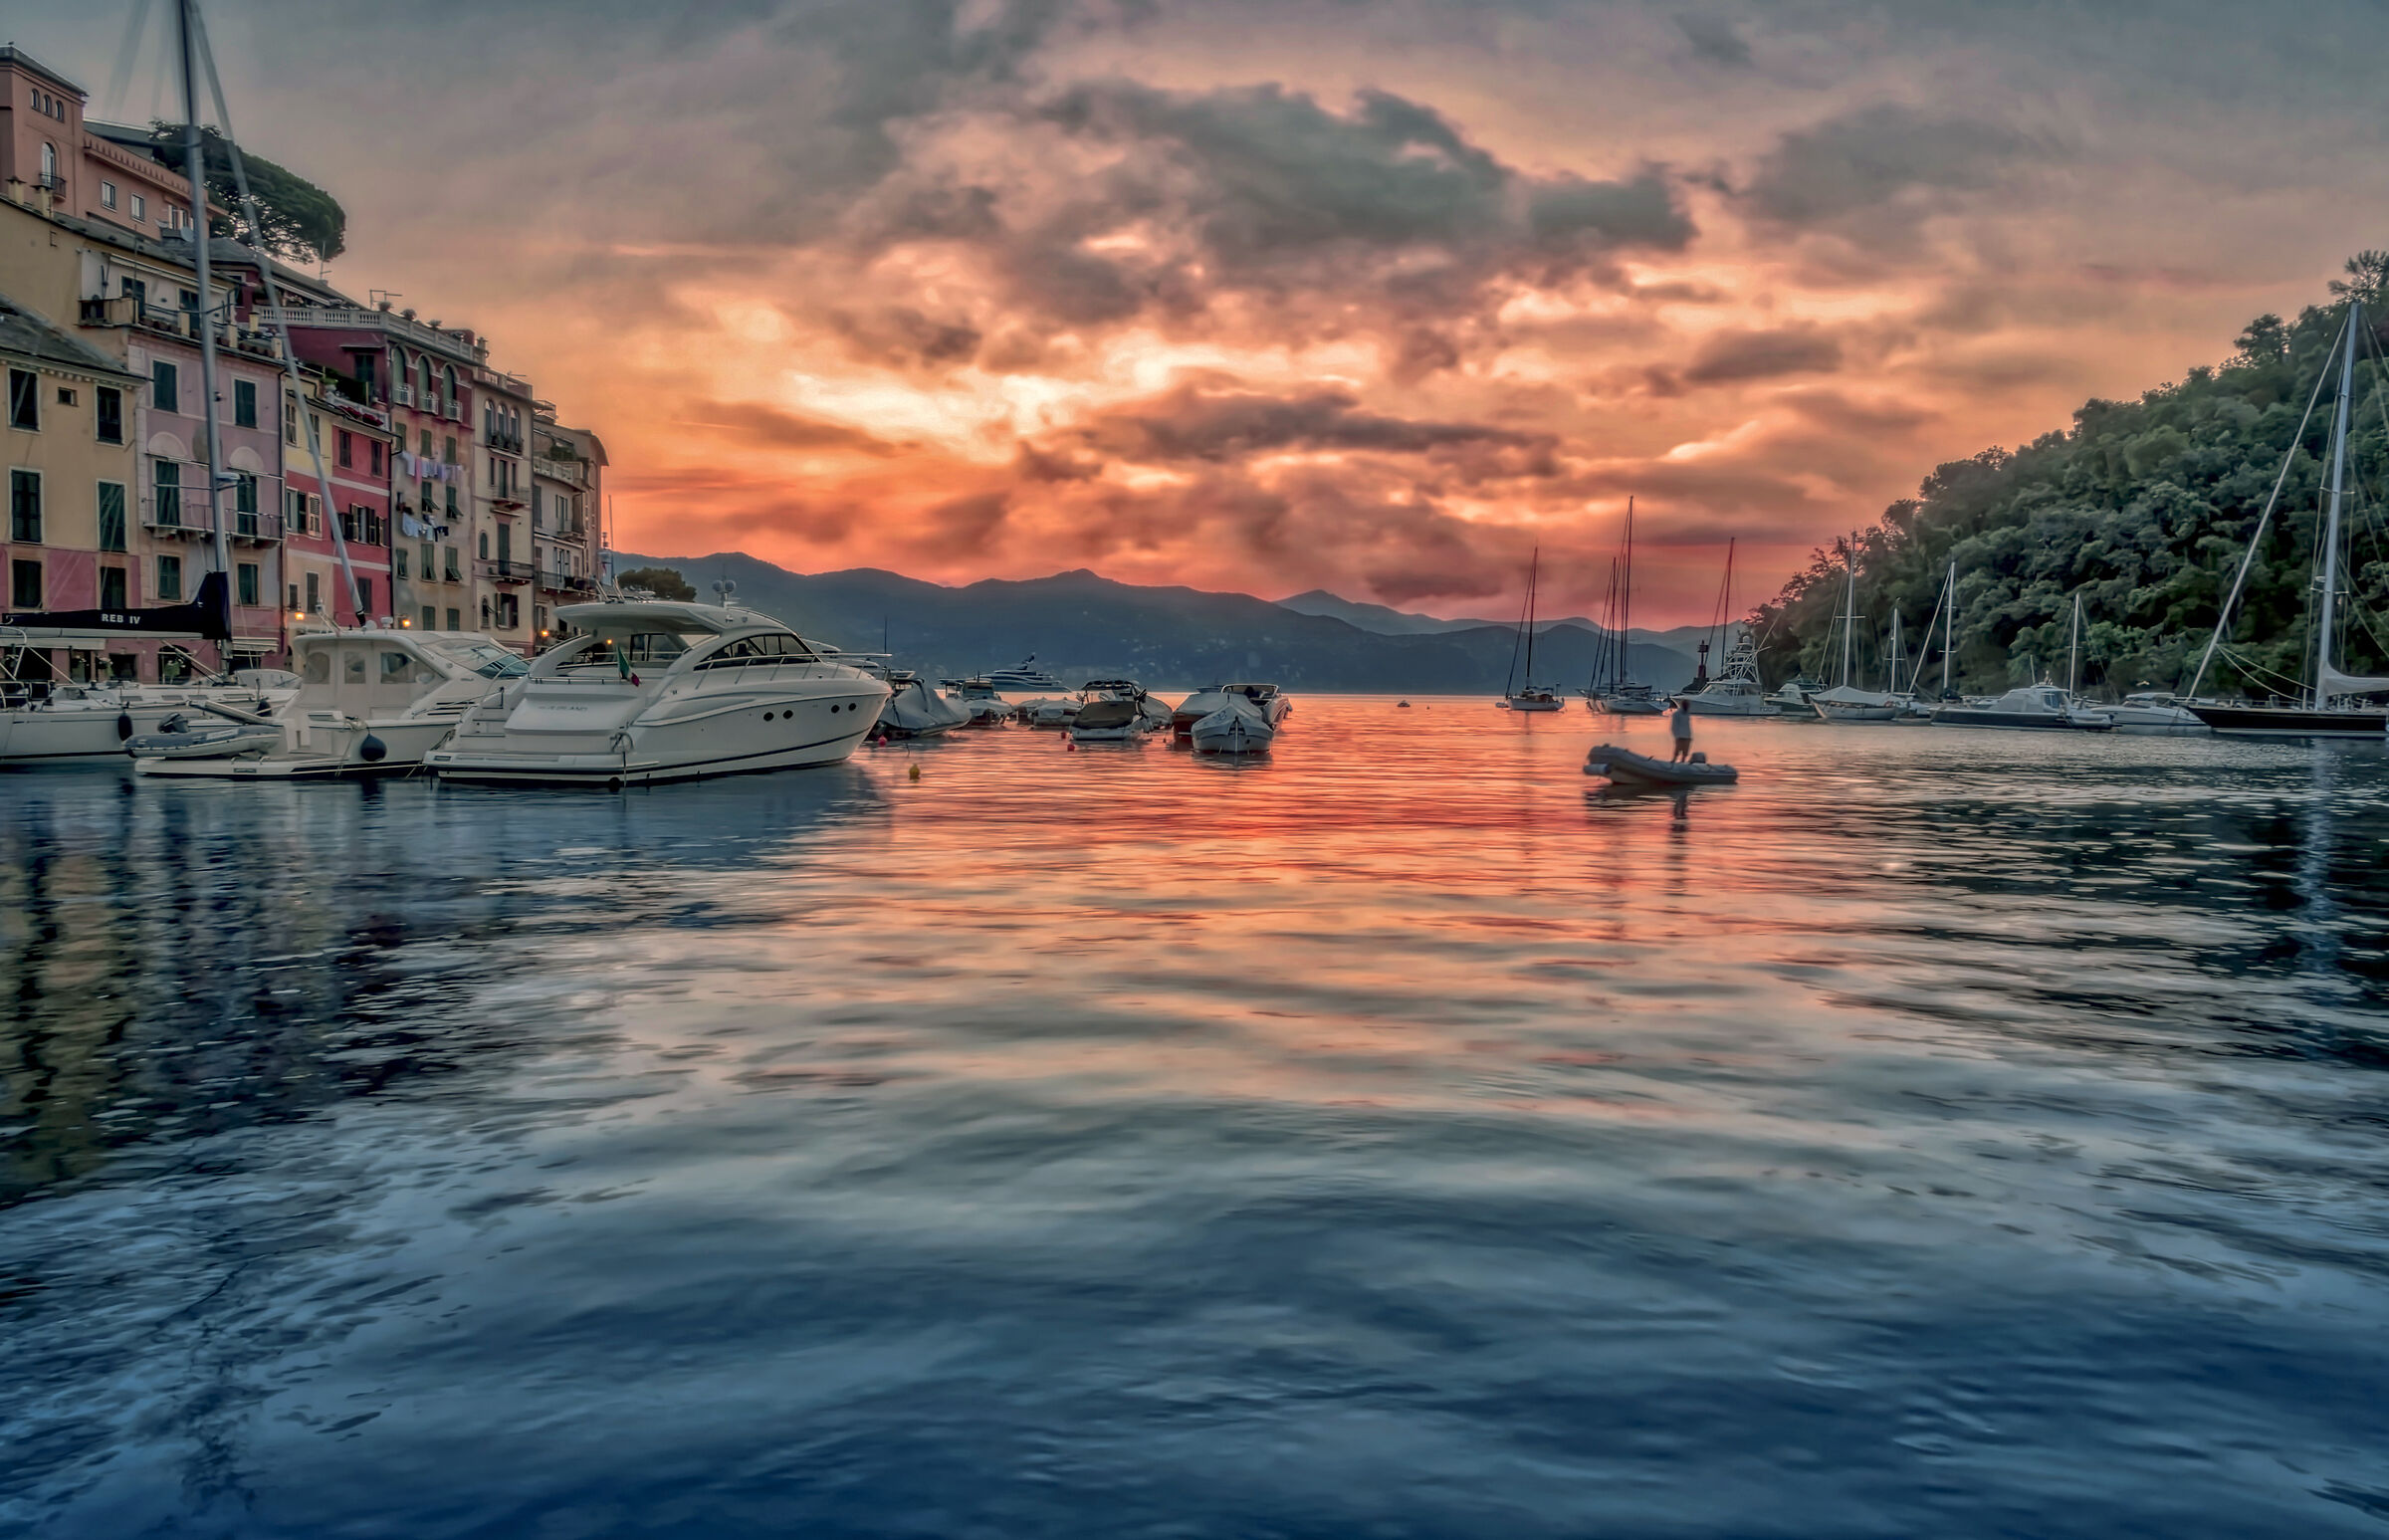 It's dawn in Portofino...